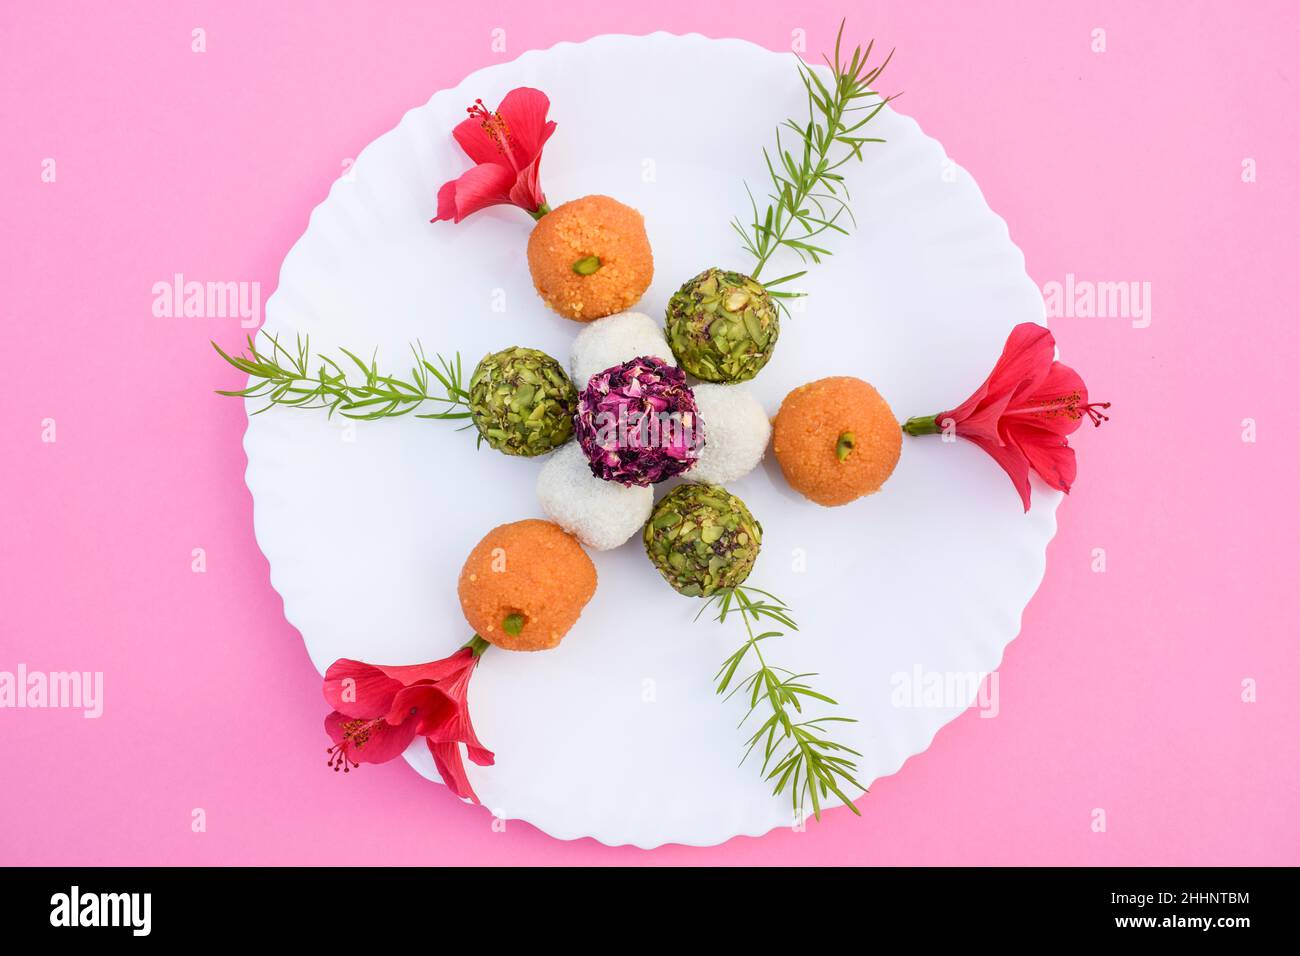 Nourriture douce indienne coloré et savoureux laddus ou ladoos de trois couleurs différentes tricolor pistache, noix de coco et motichur.Jour de la République et Inde Banque D'Images